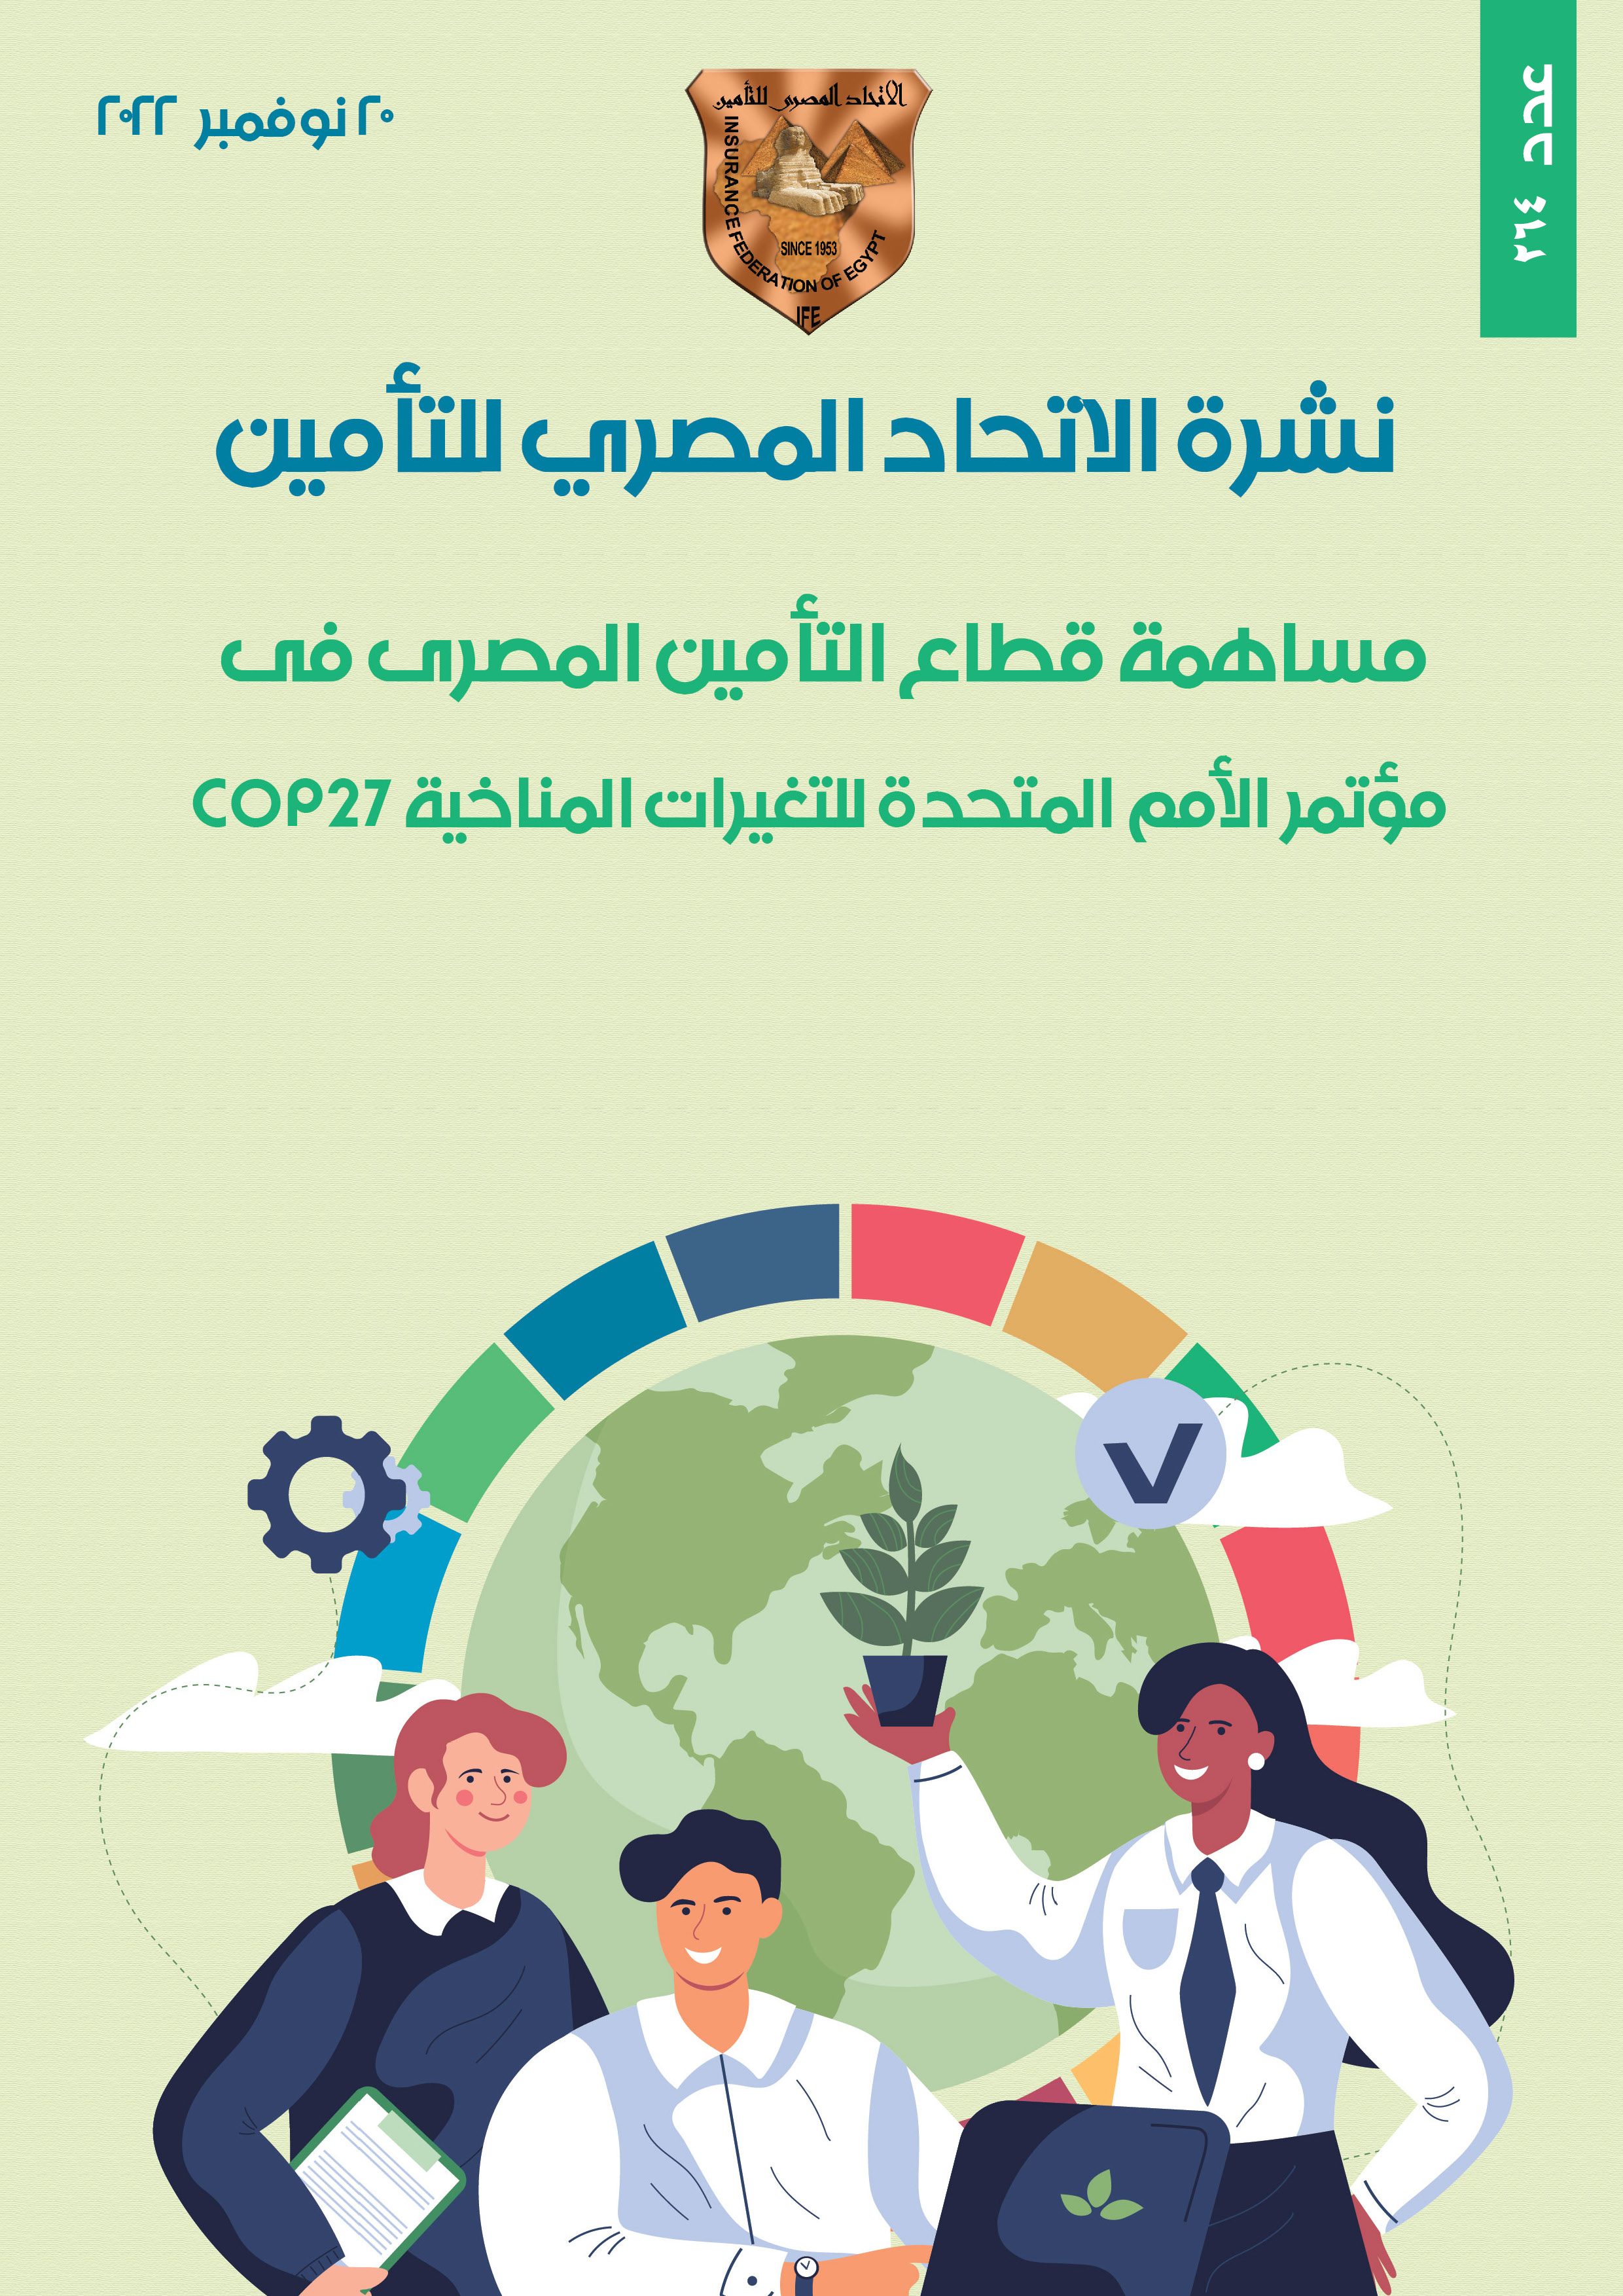 مساهمة قطاع التأمين المصرى فى مؤتمر الأمم المتحدة للتغيرات المناخية COP27